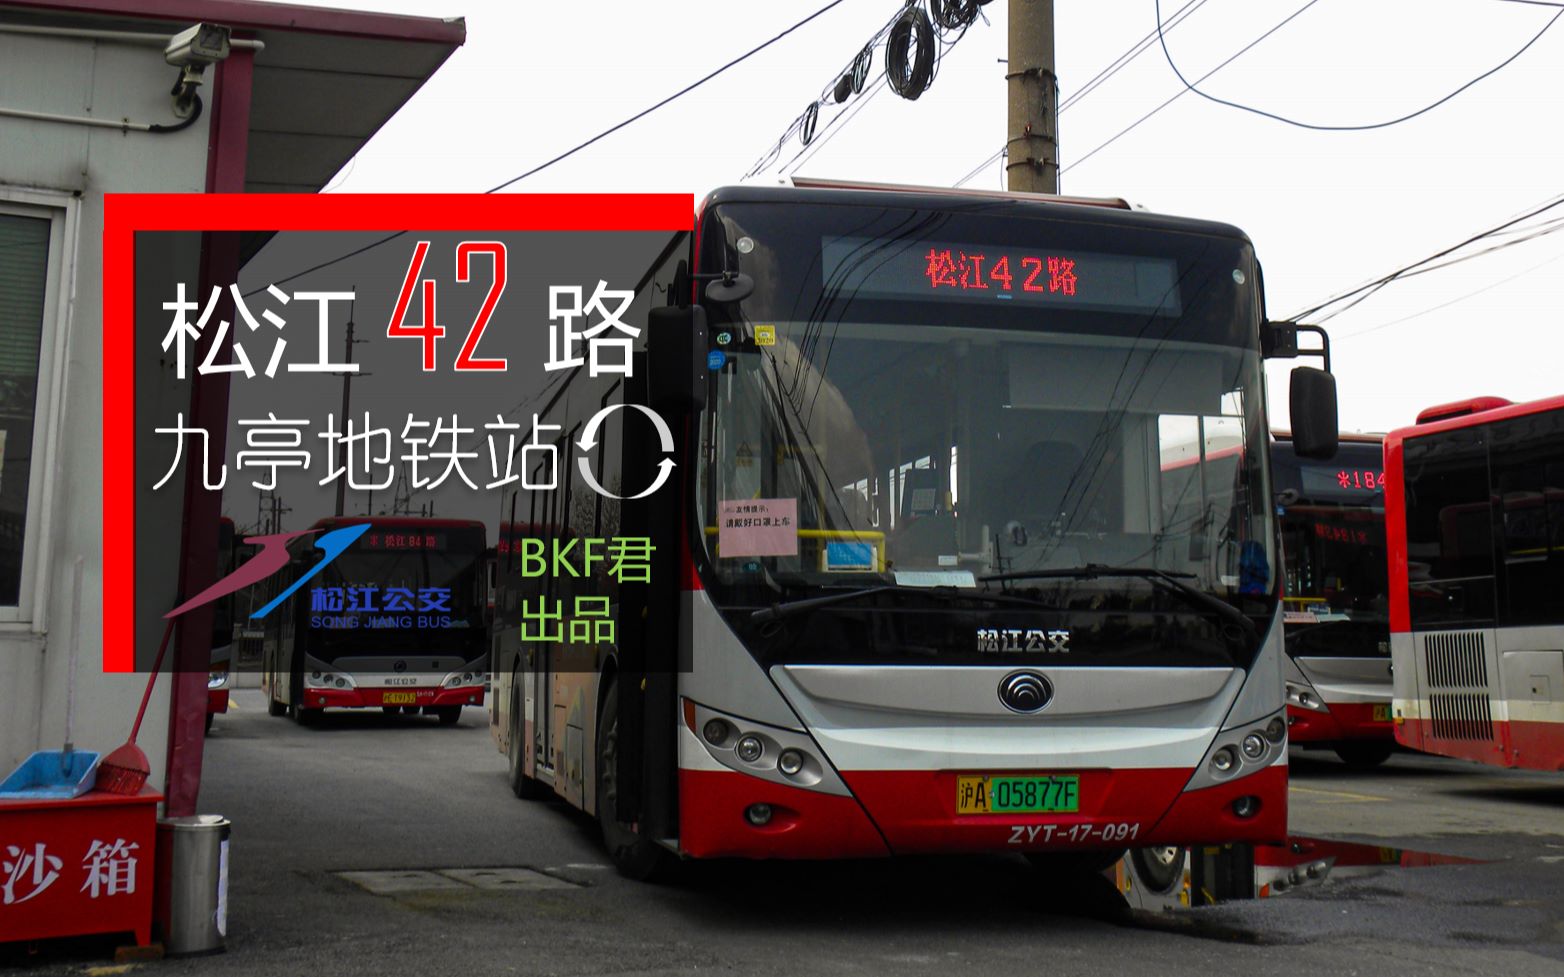 【前面展望】上海公交 松江42路 [九亭地铁站→九亭地铁站]「最繁忙的